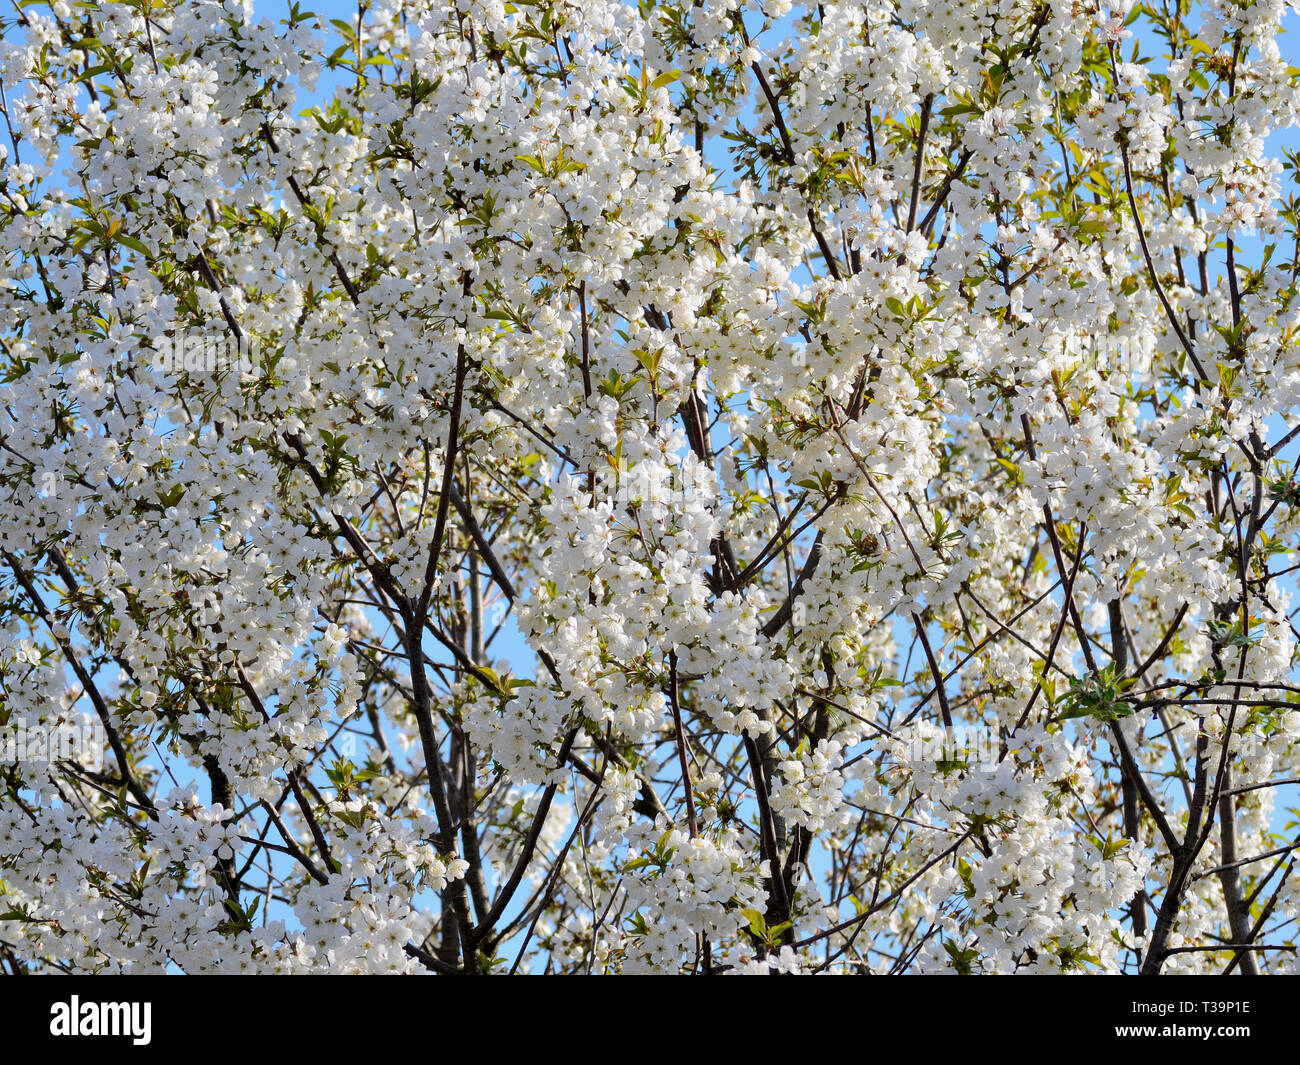 Sour cherry in bloom. Flowering prunus cerasus tree. Stock Photo